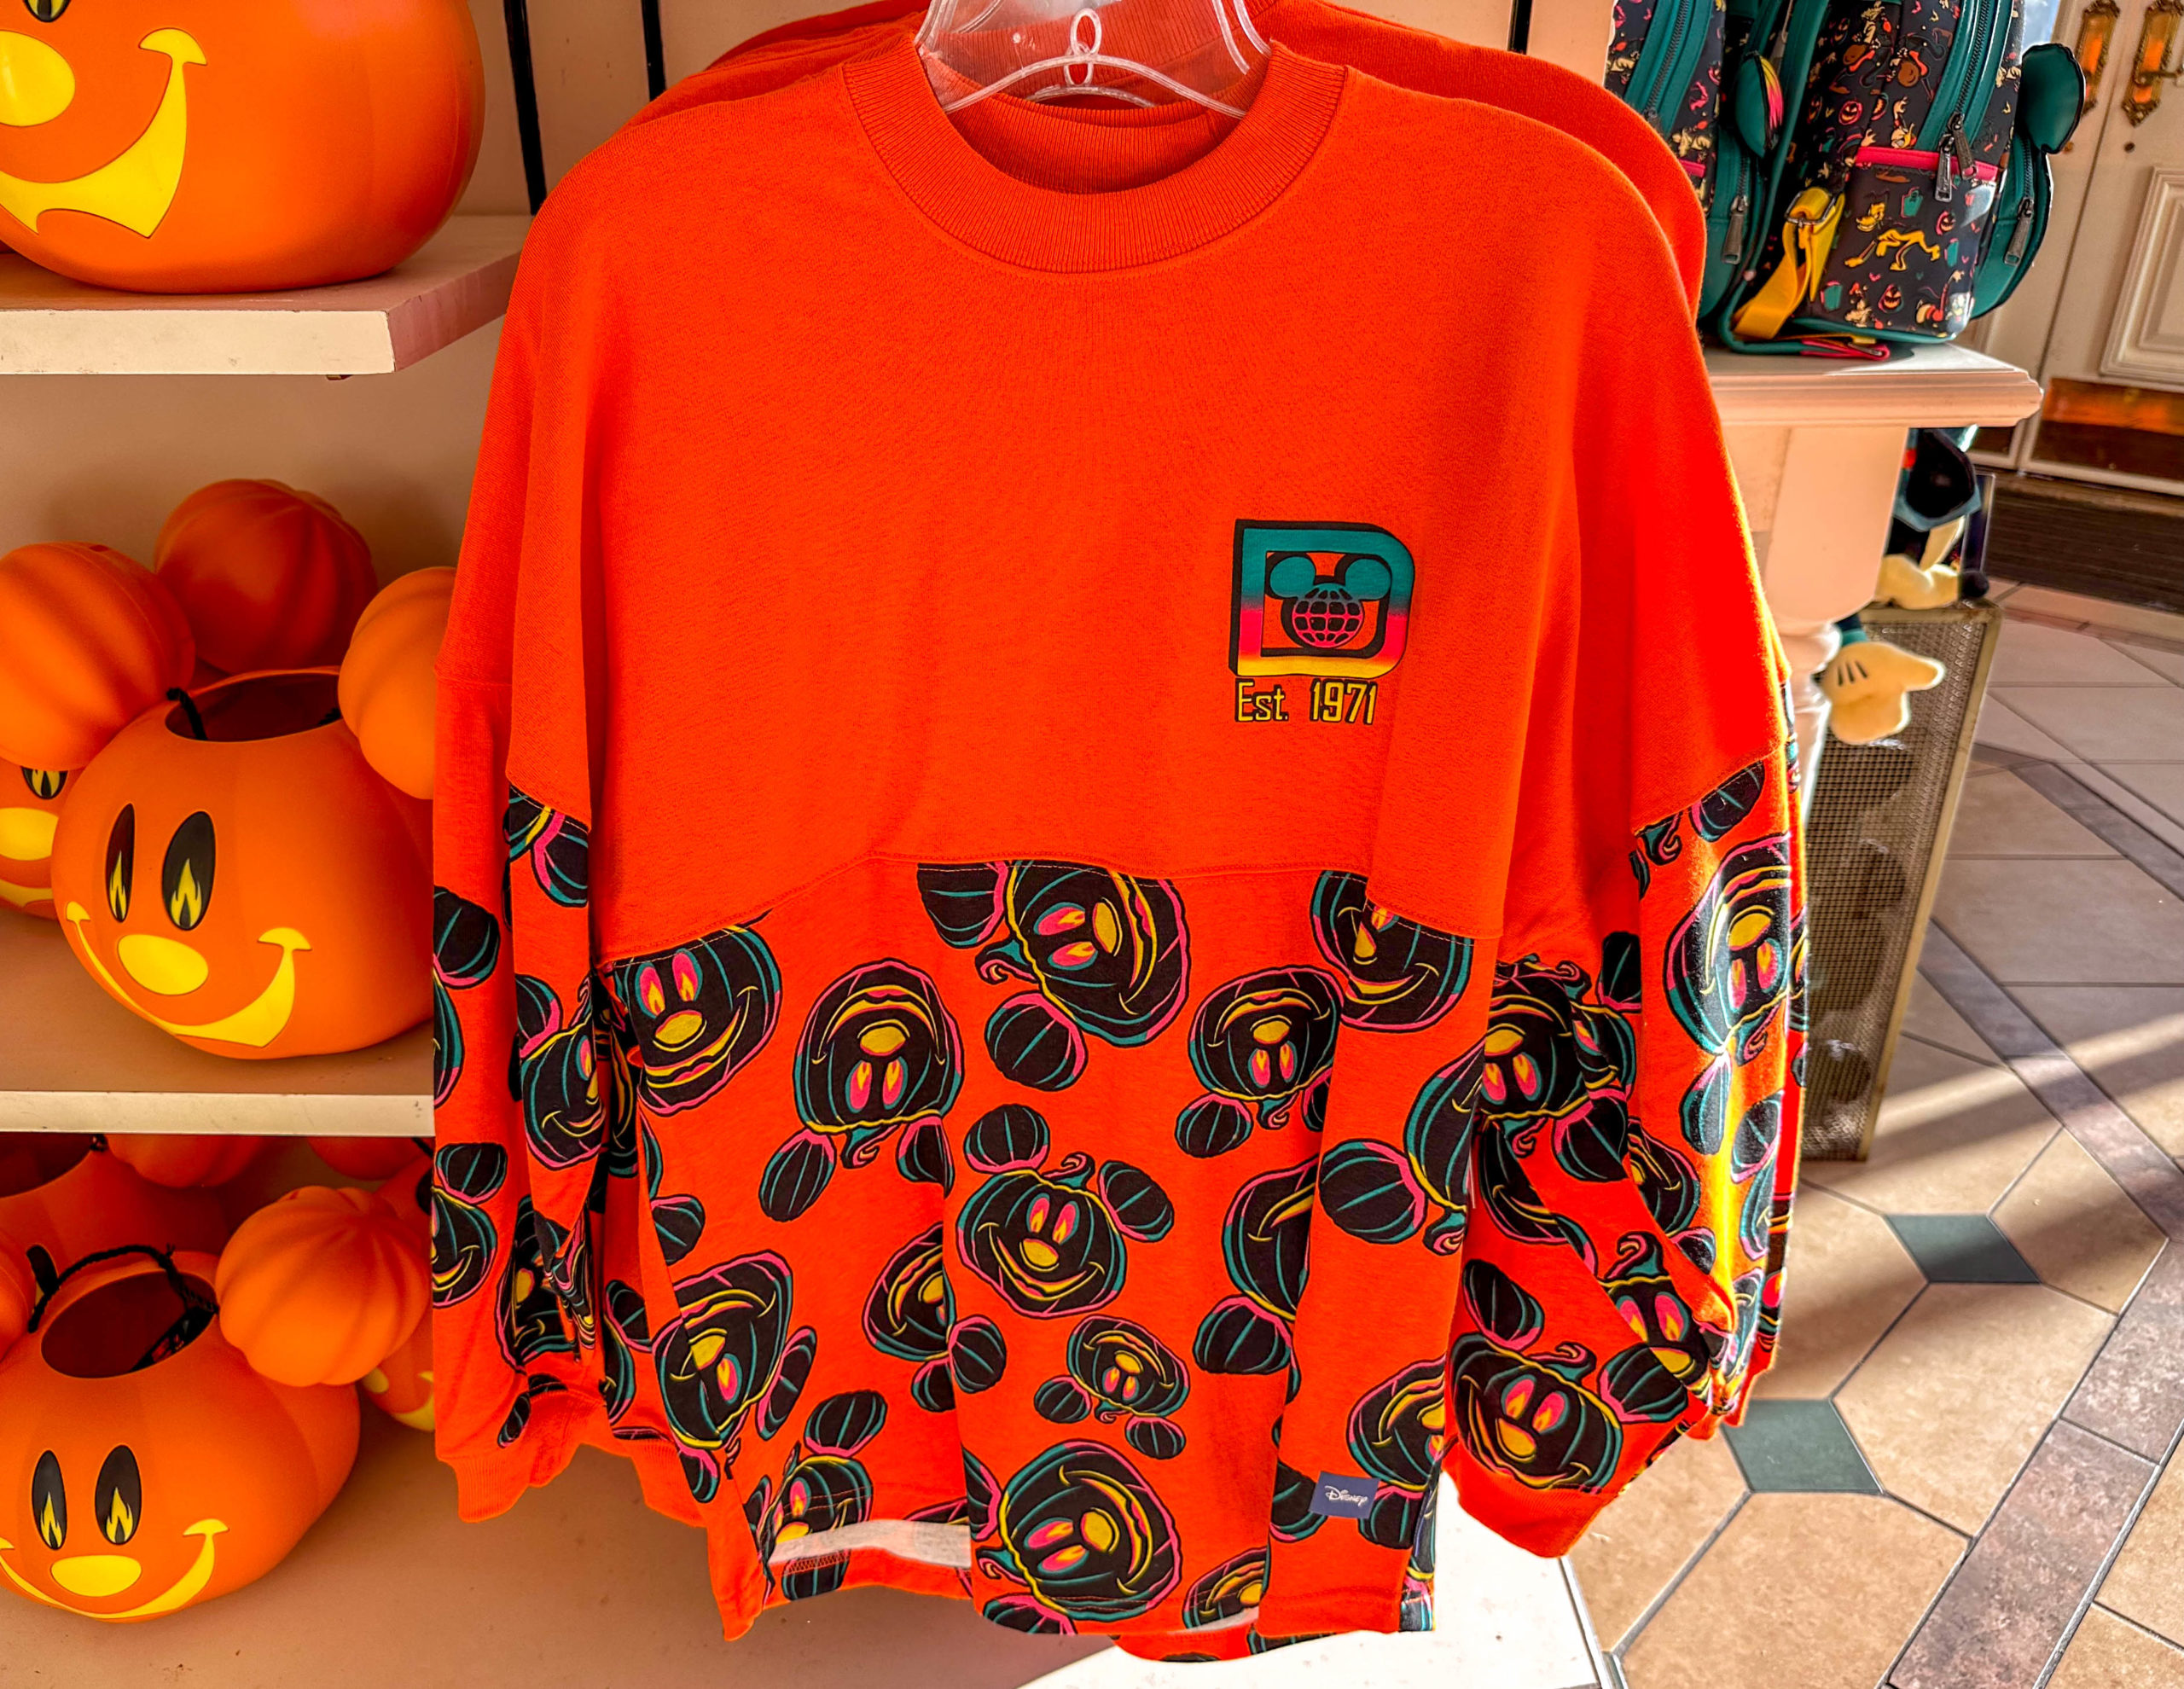 Gourd-y Halloween Spirit Jerseys Crop Up at Disney World